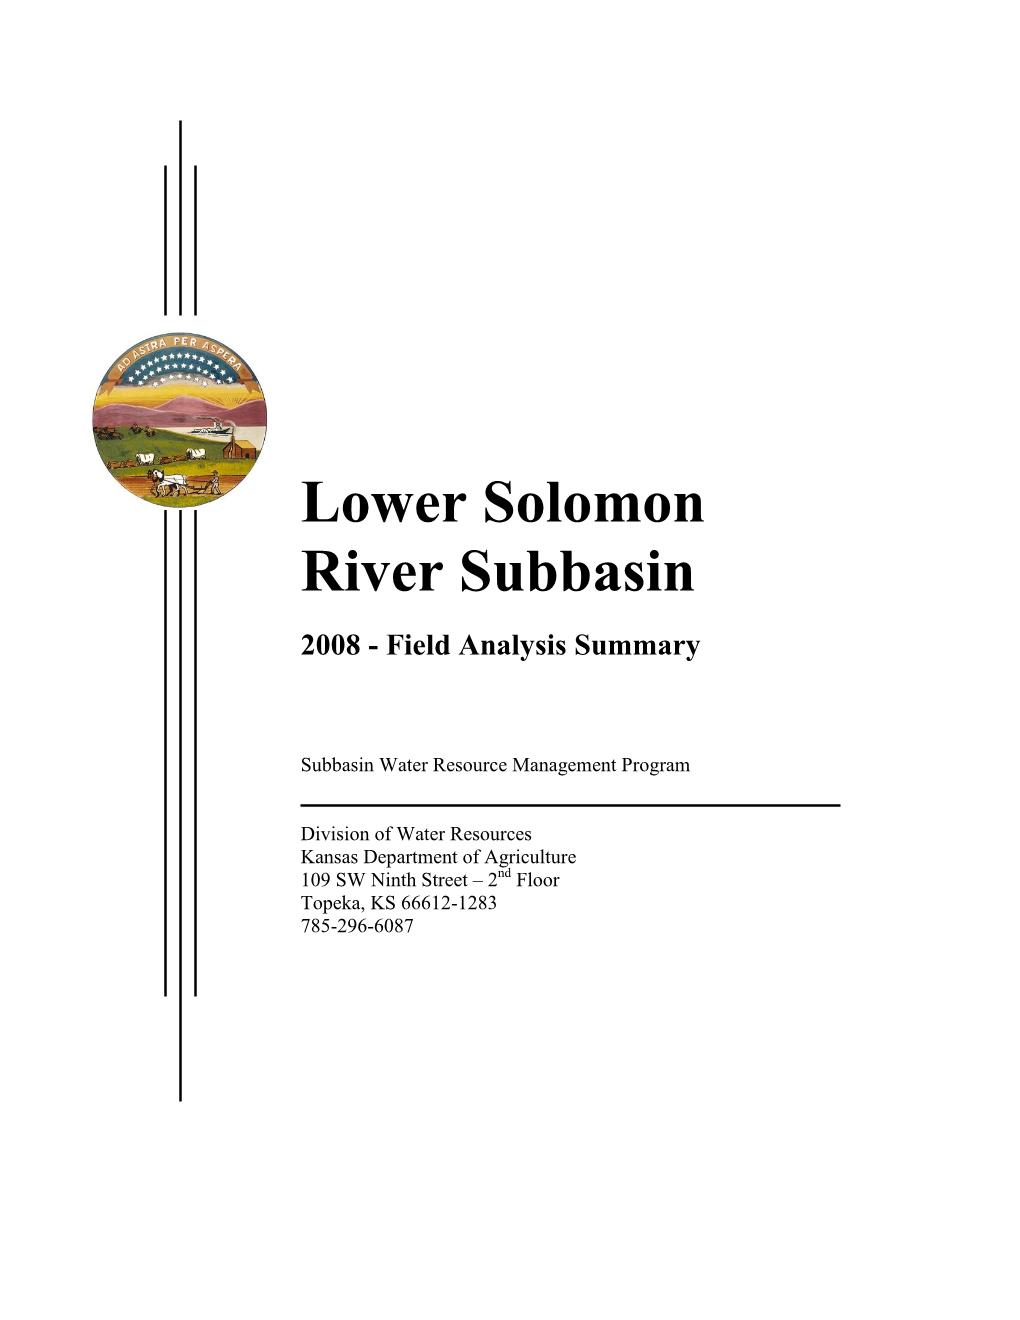 Lower Solomon River Subbasin